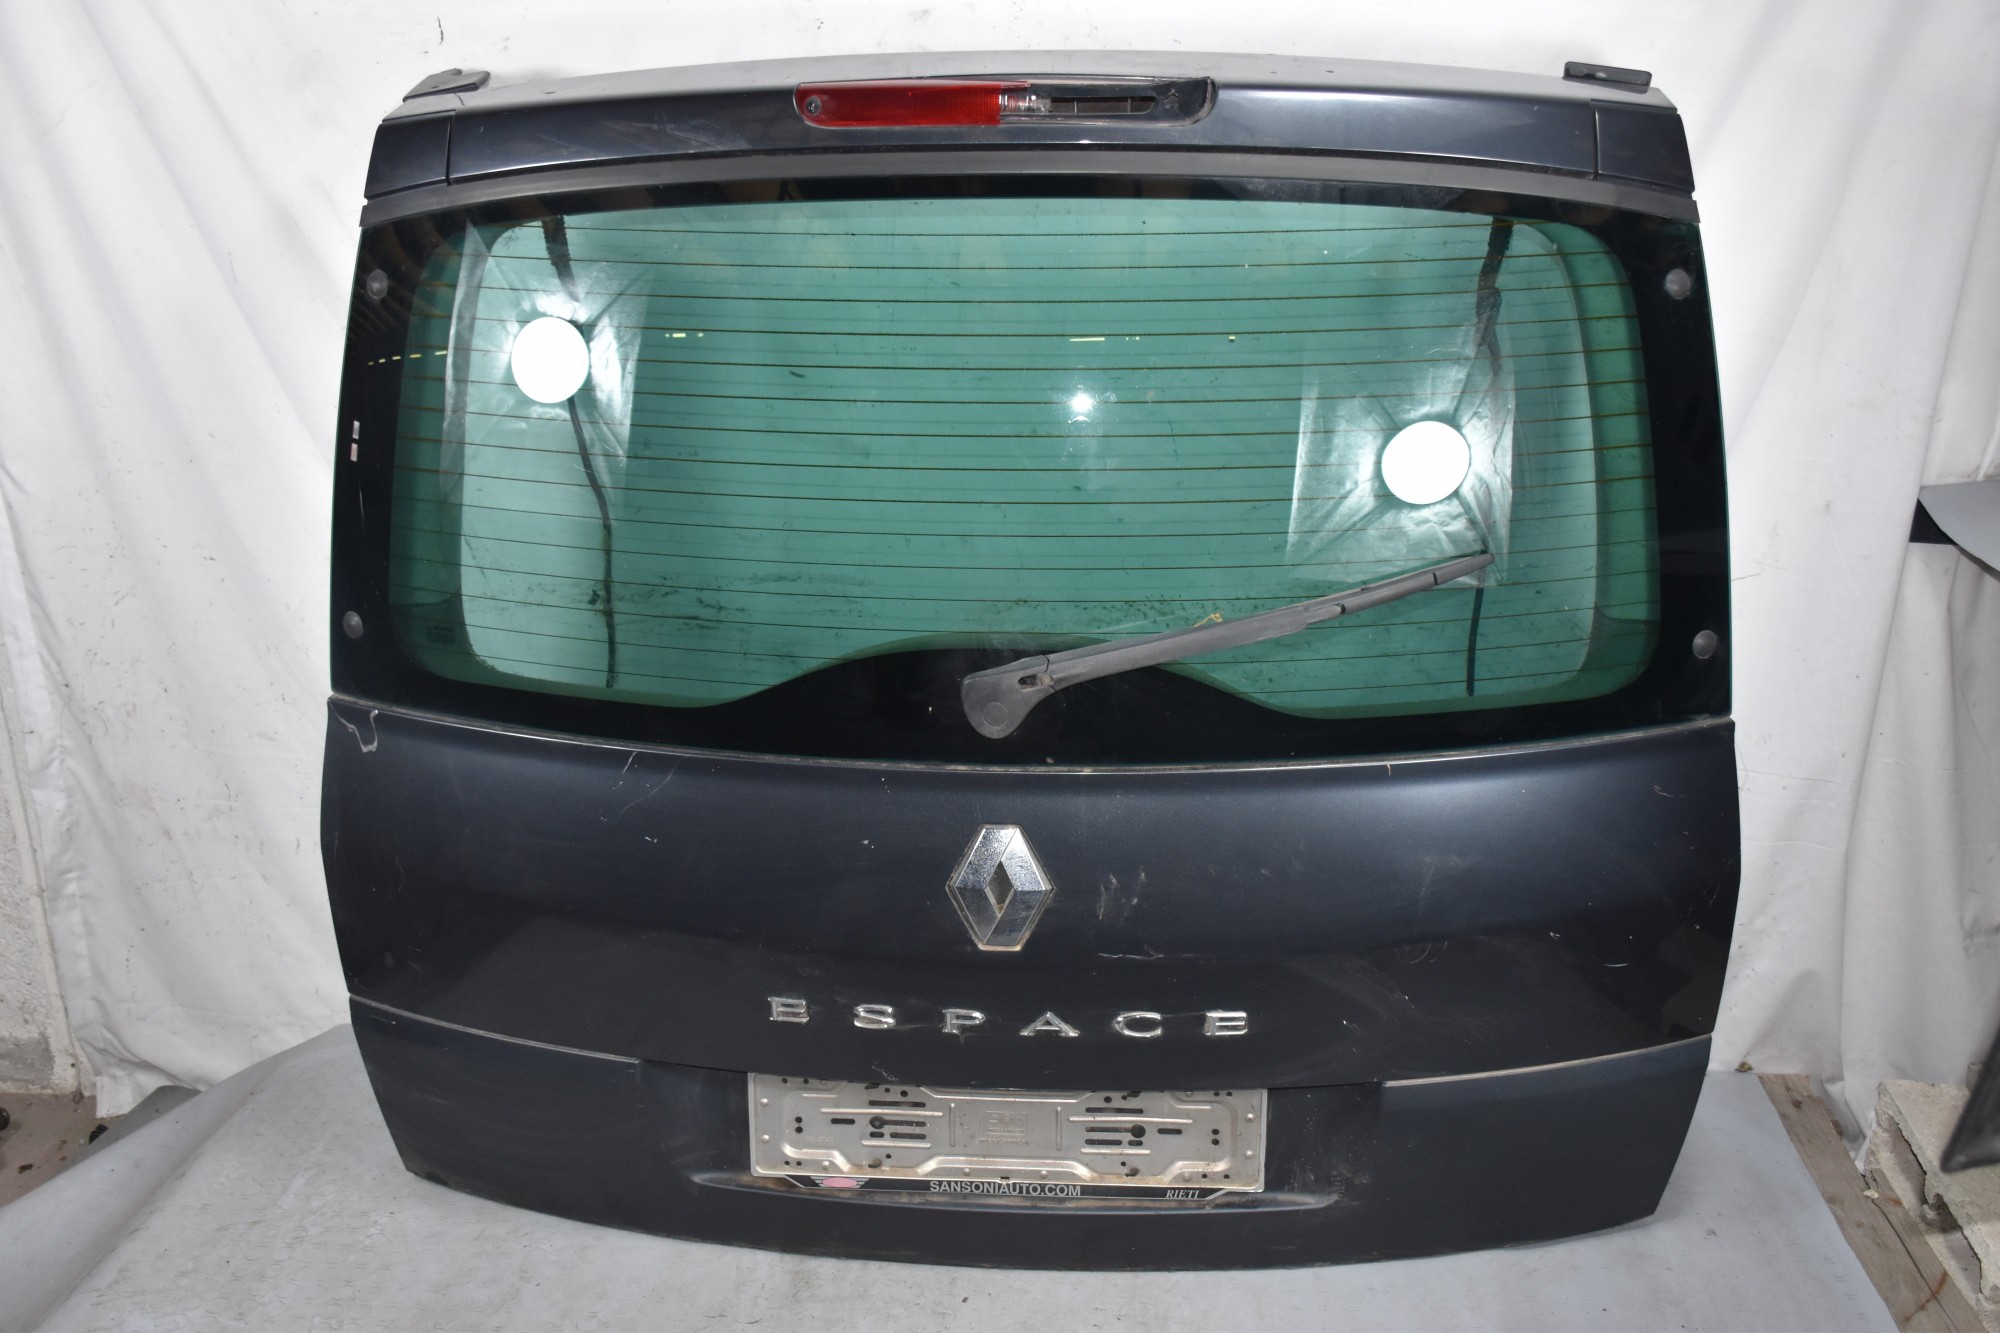 Portellone Bagagliaio Posteriore Renault Espace IV dal 2002 al 2014  1631875666573